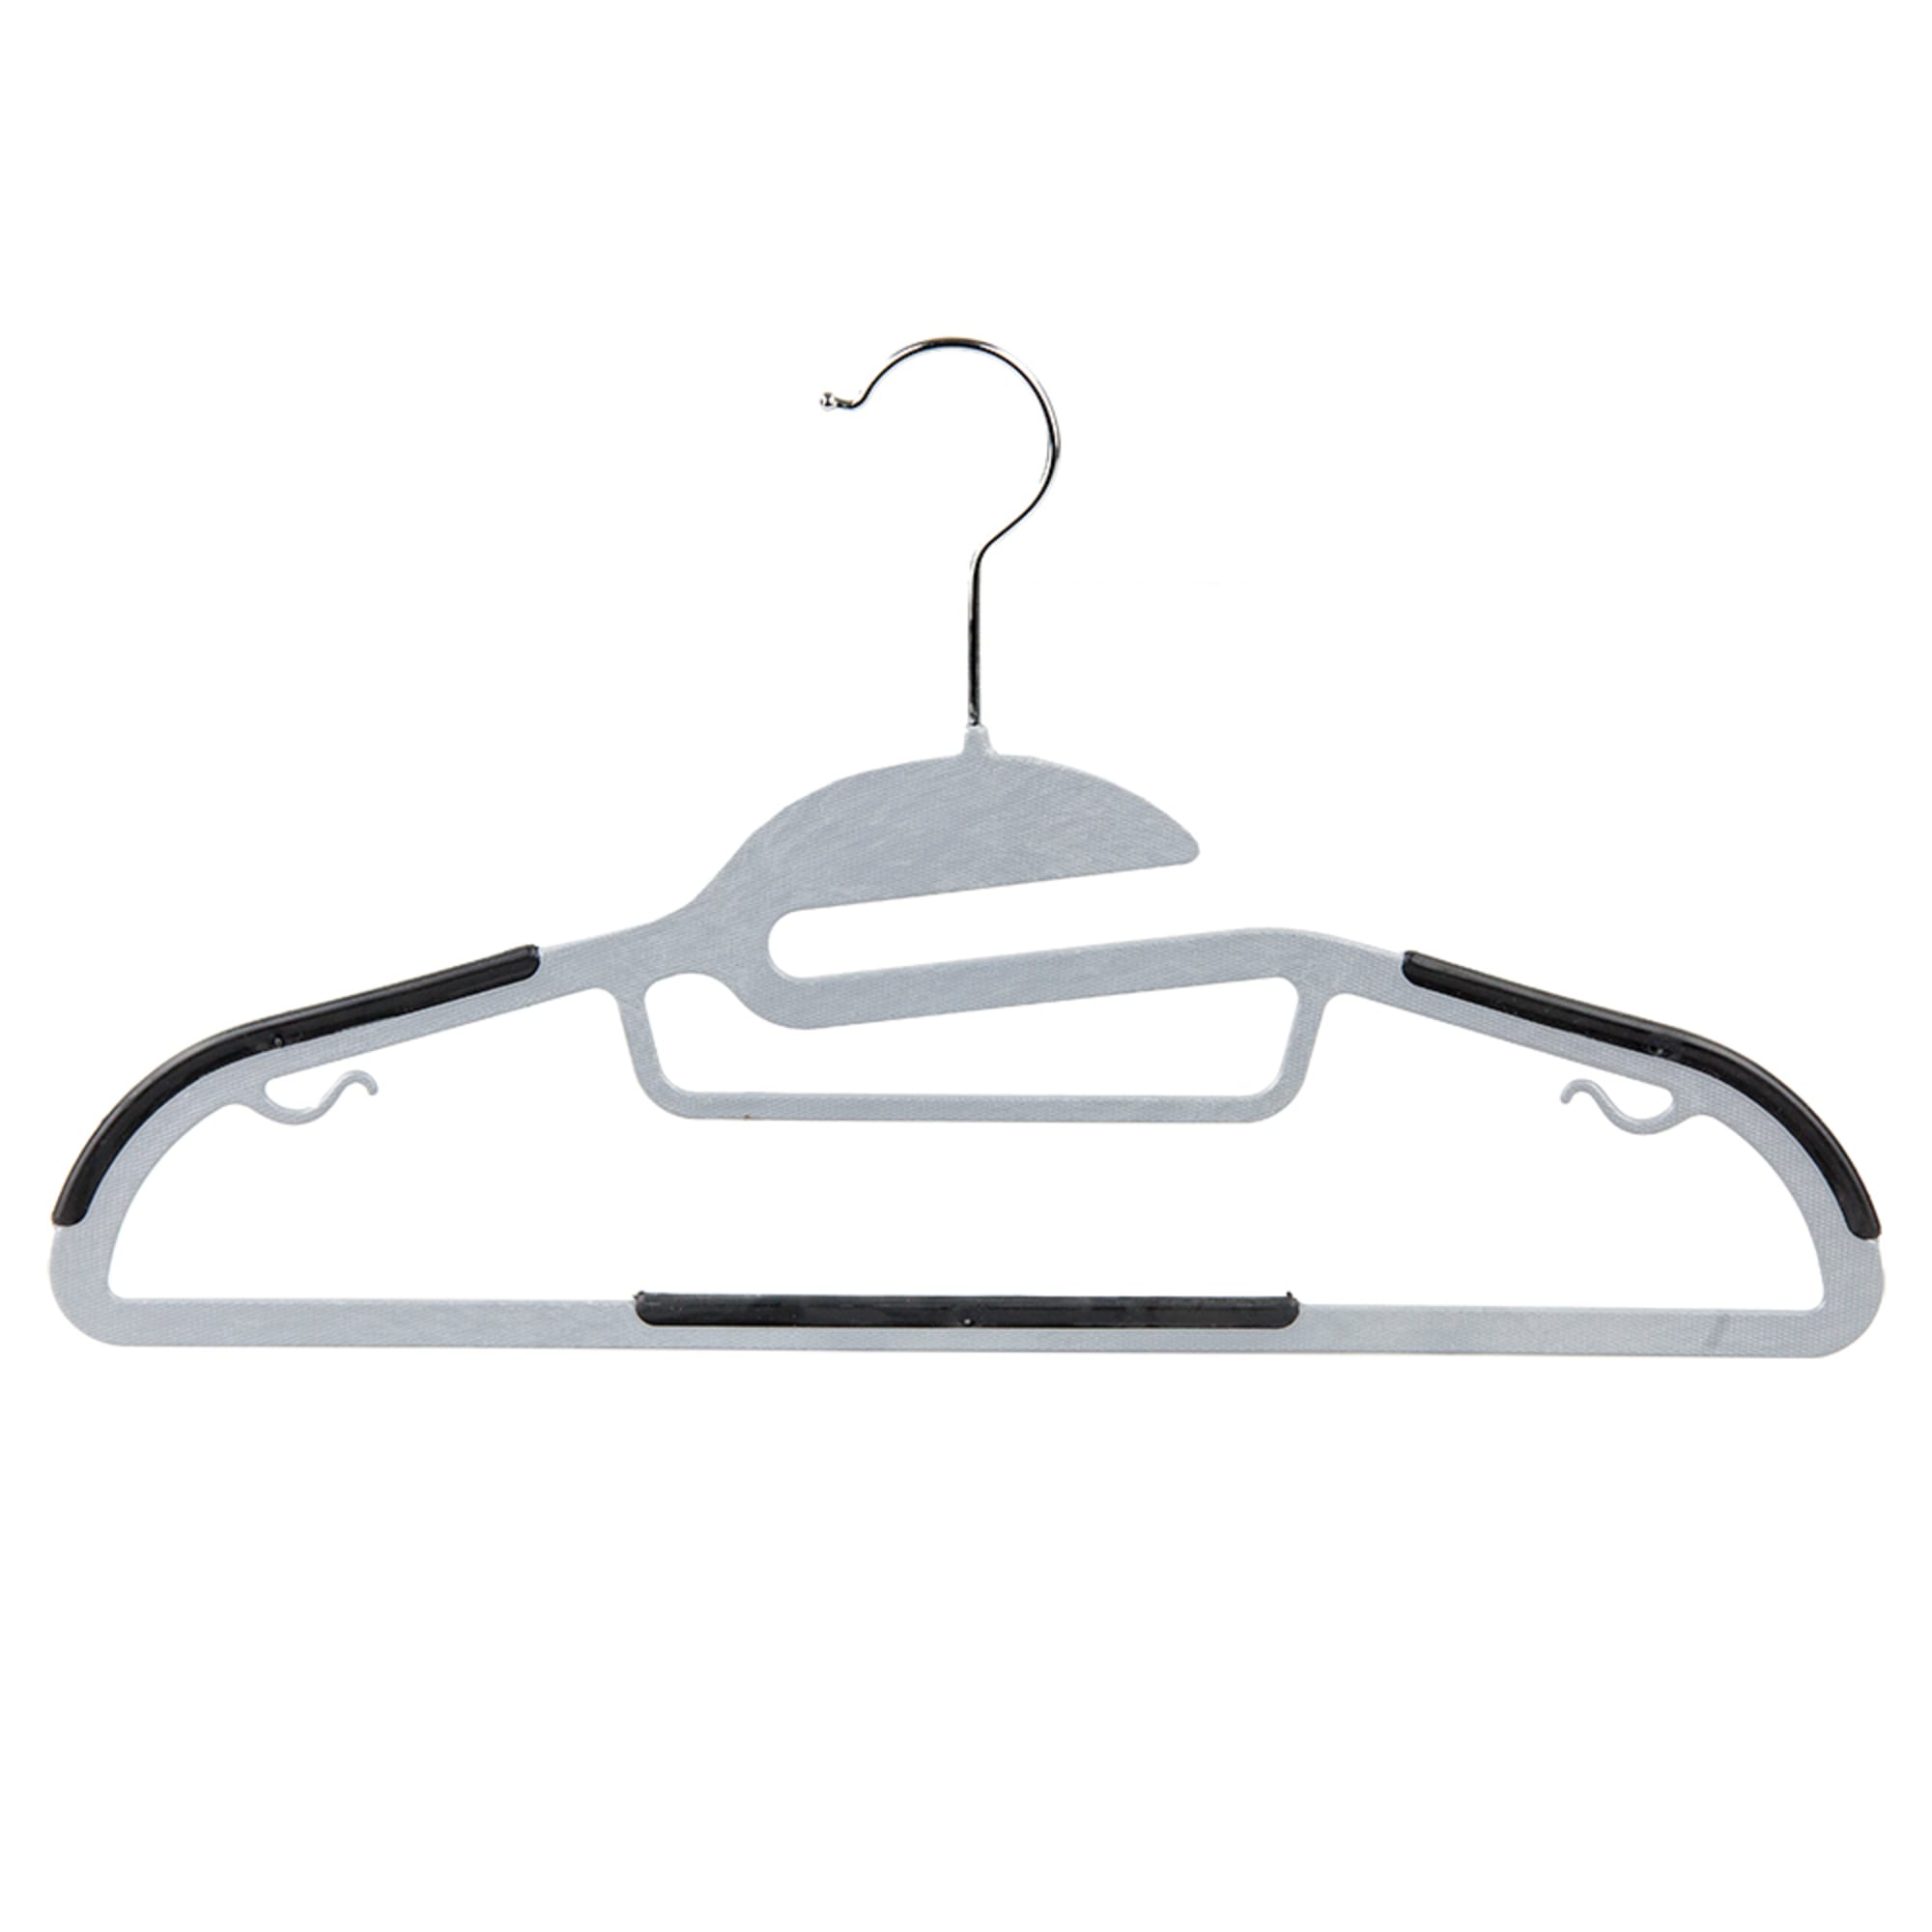 Home Basics Black Velvet Shirt Hangers 3-Pack HDC65632 - The Home